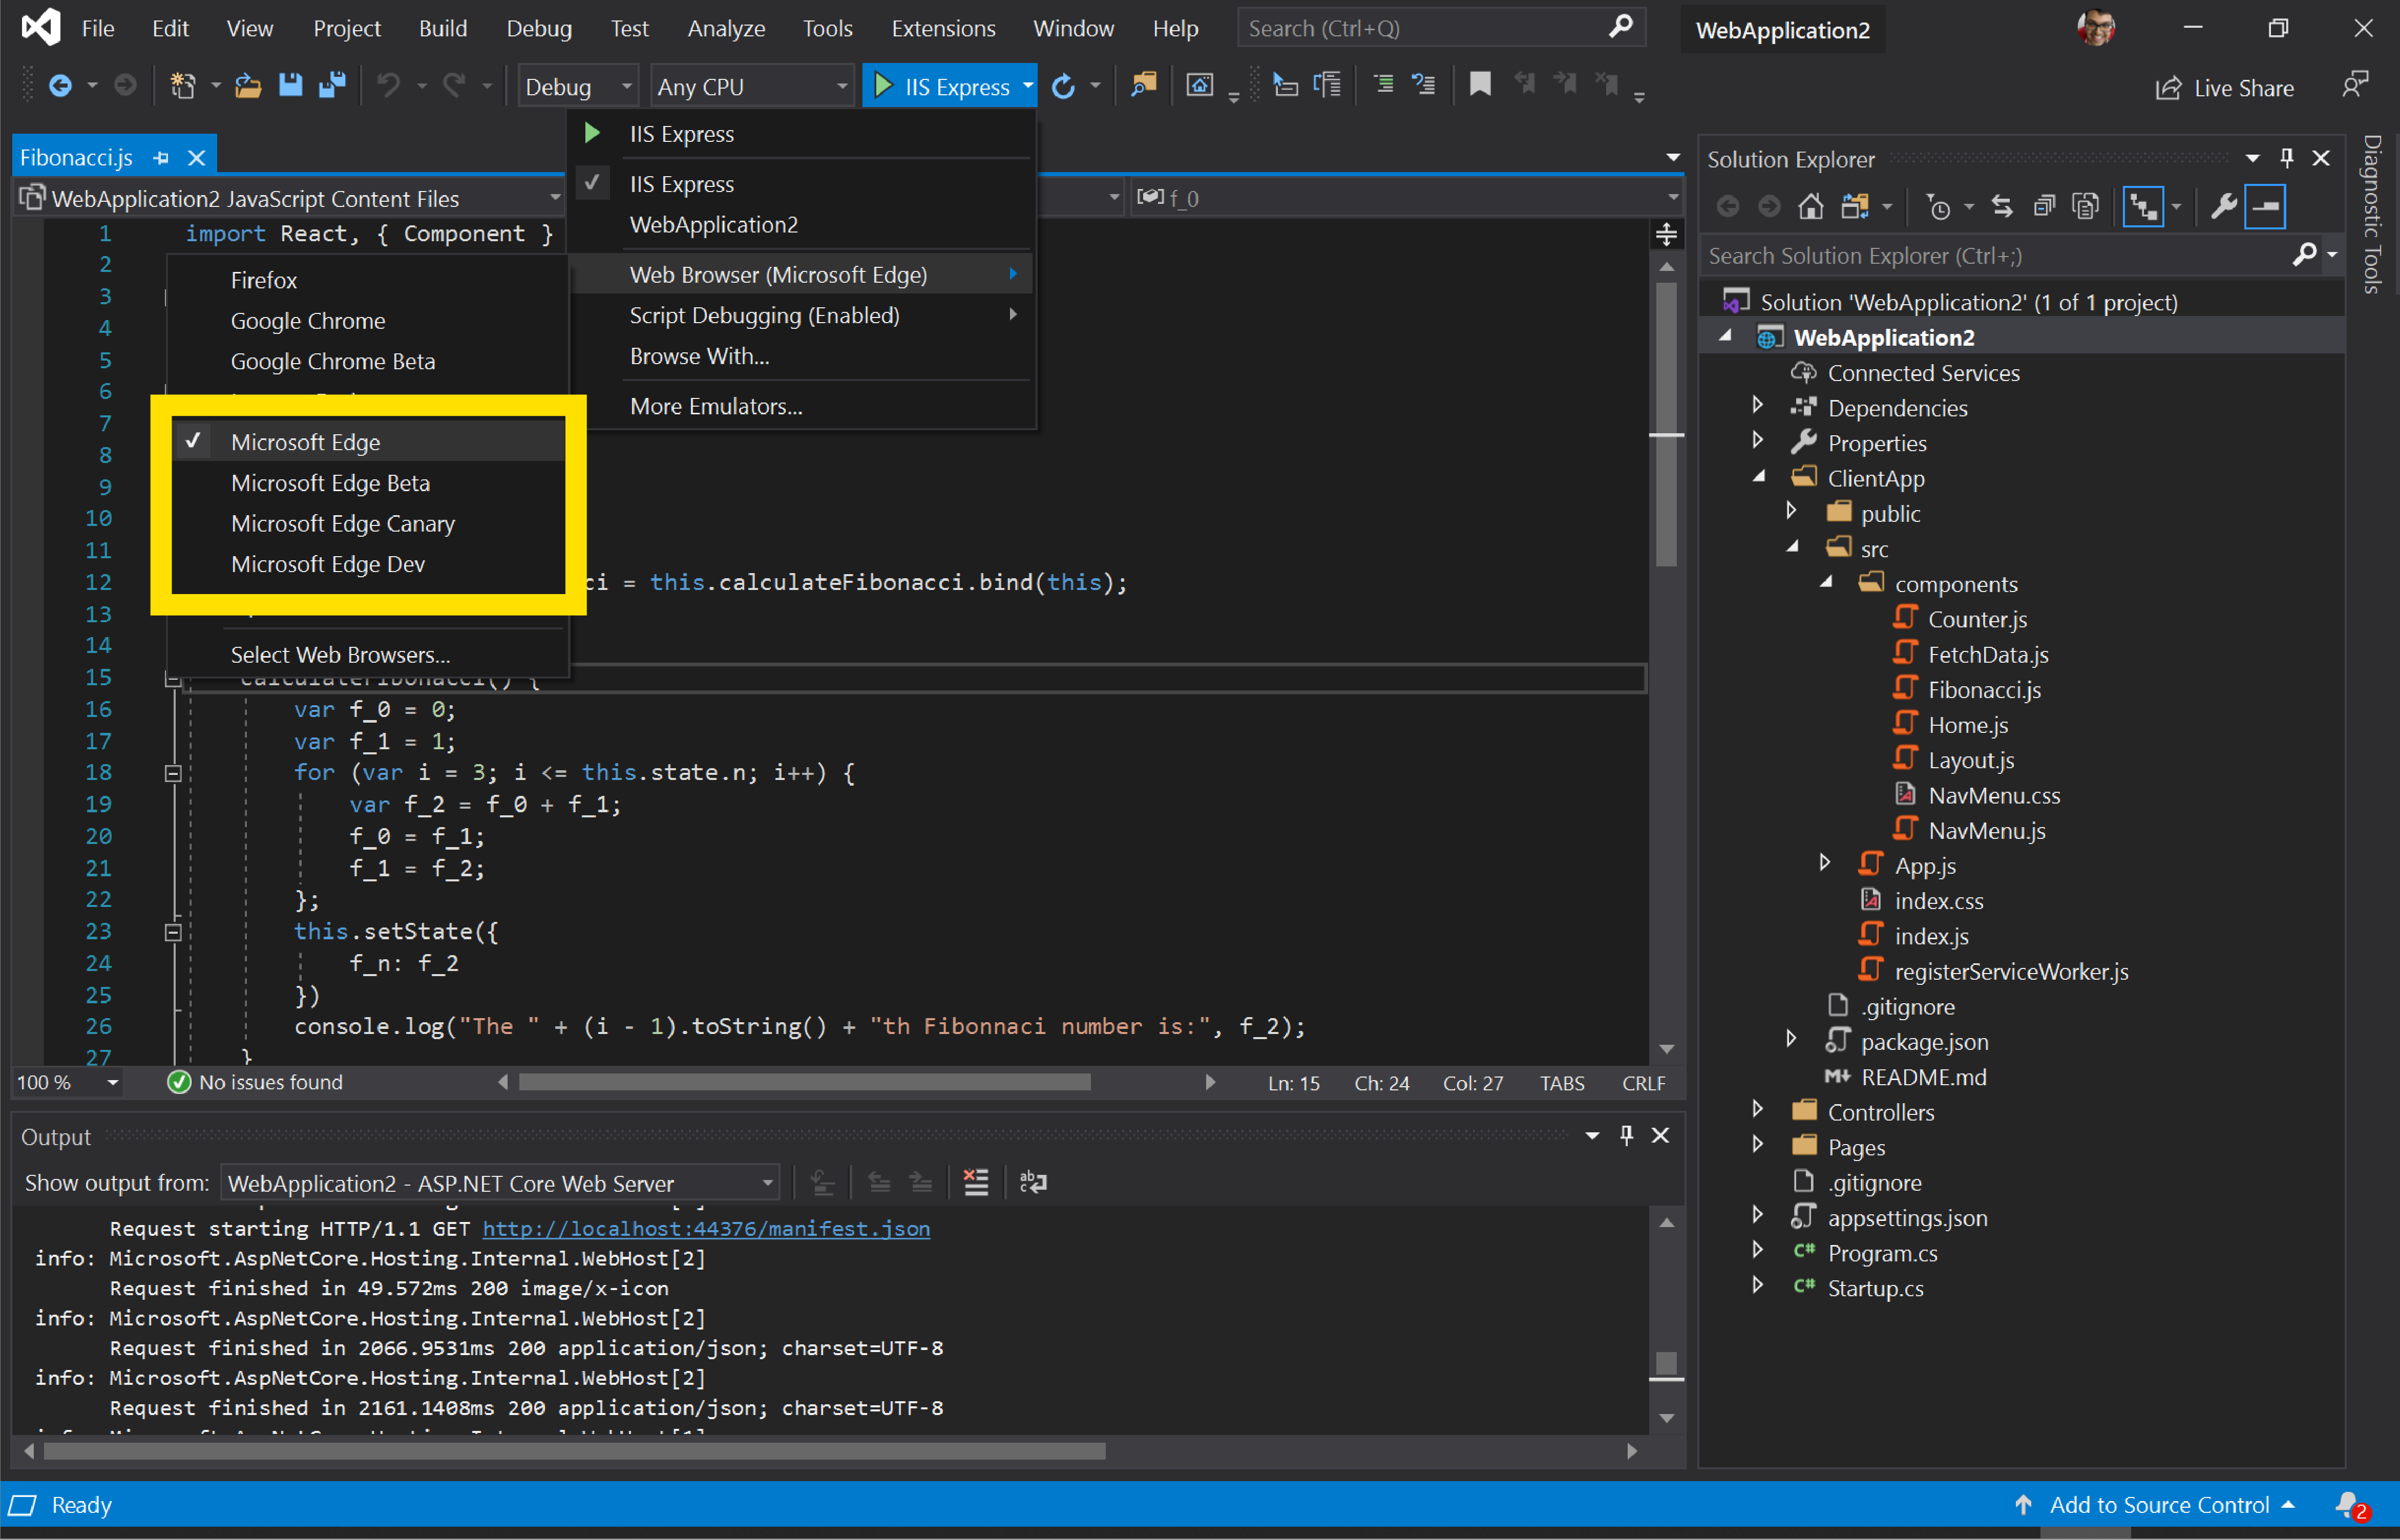 Visual Studio con la opción de iniciar la aplicación web en Microsoft Edge Canary, Dev o Beta